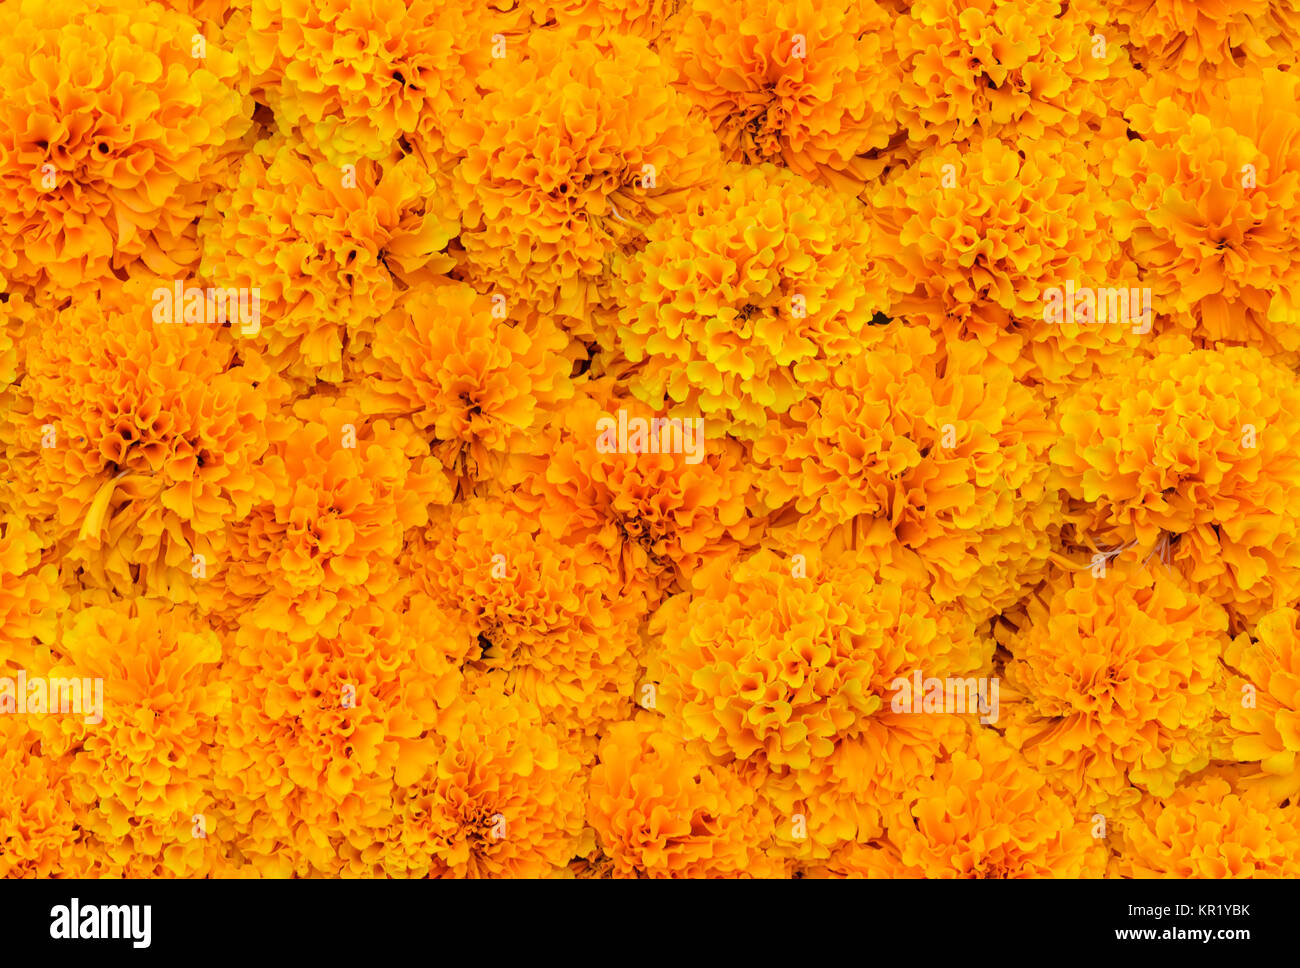 Orange Marigold flower background Stock Photo - Alamy